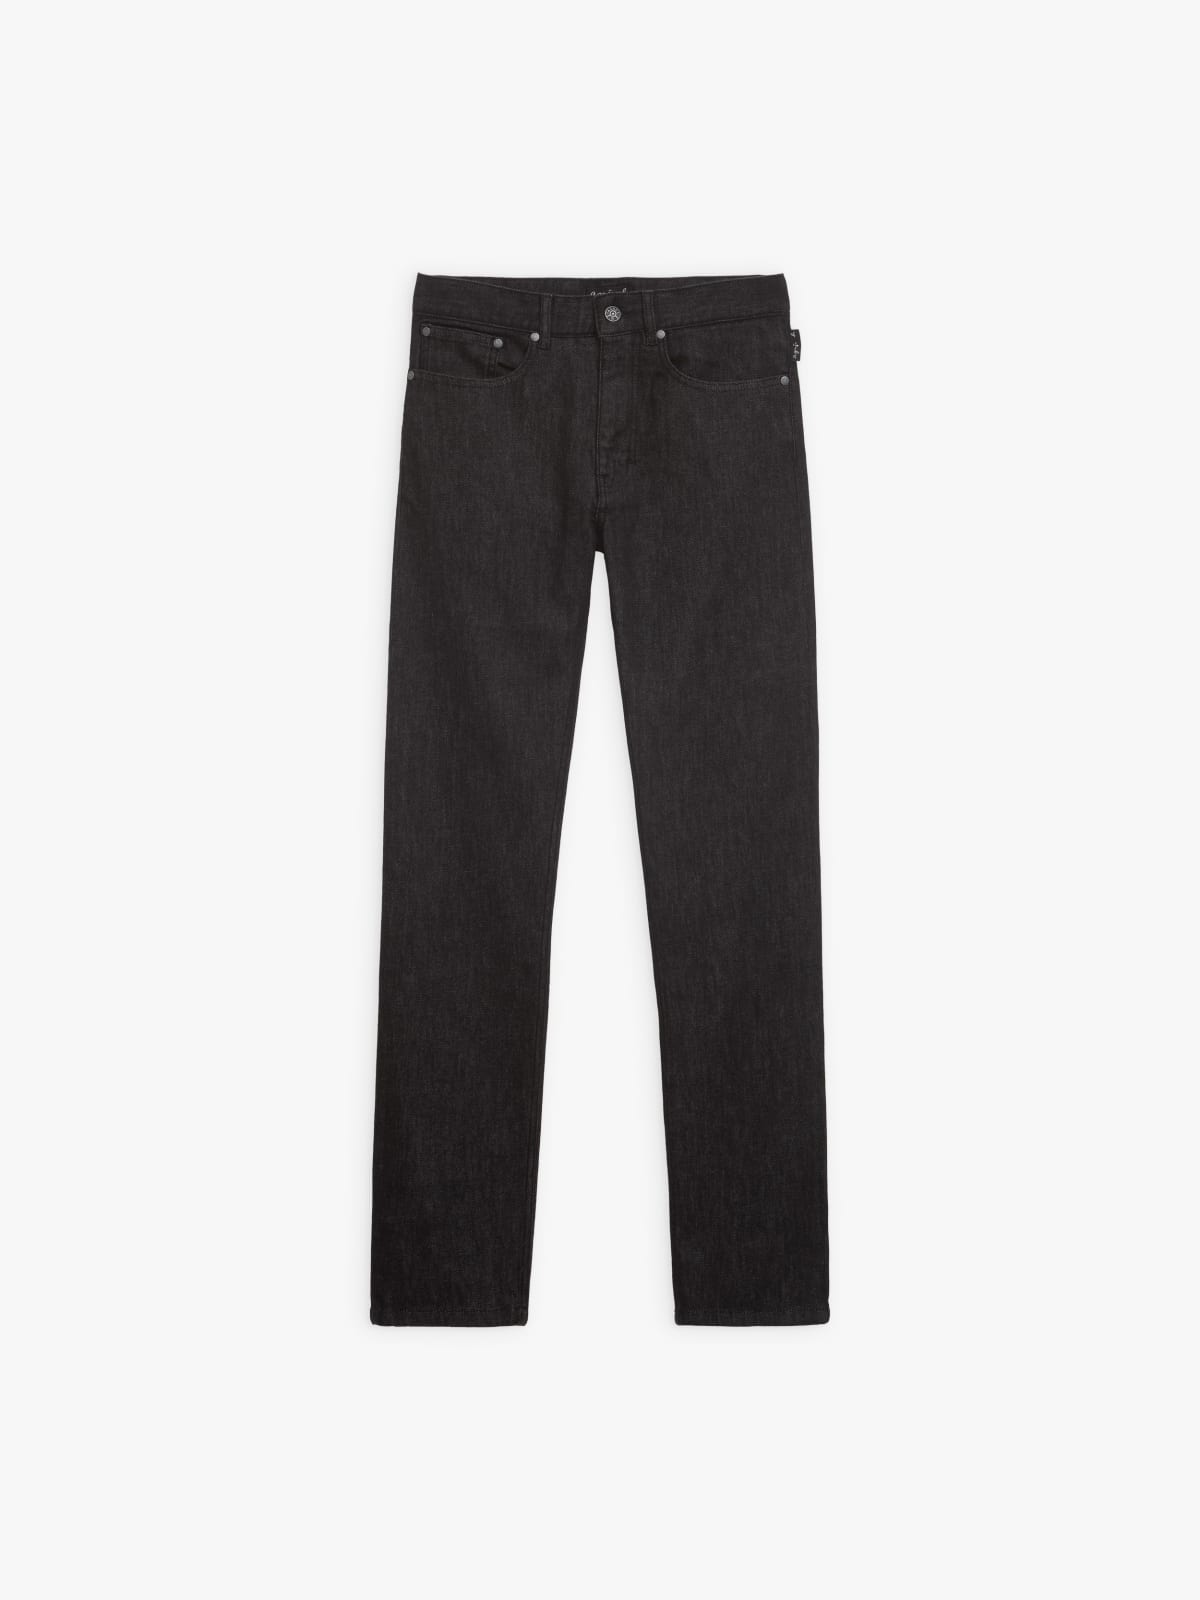 black #1 slim jeans in stretch denim